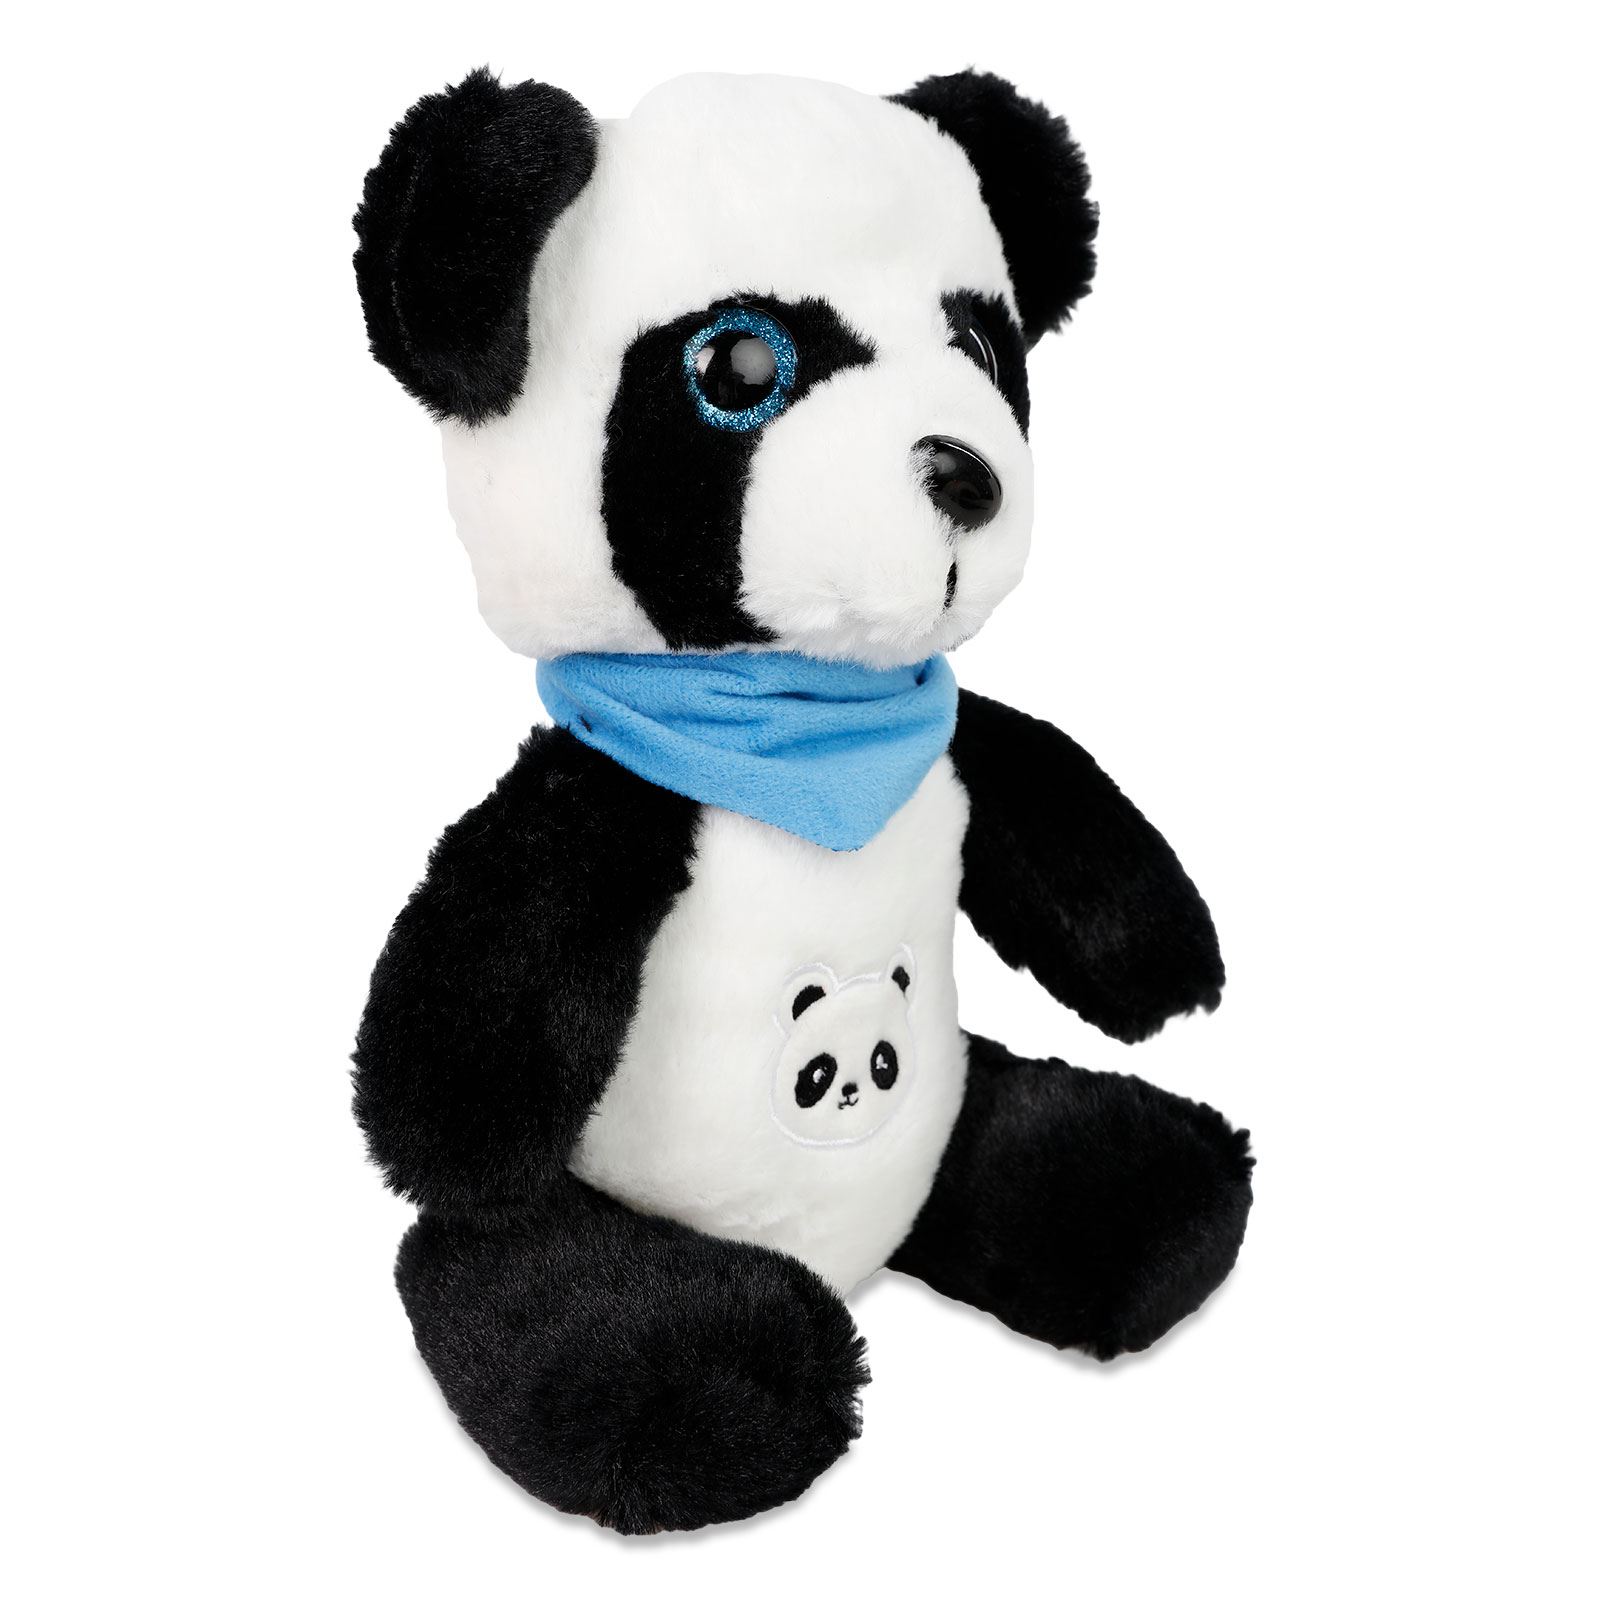 Halley Oyuncak Asorti Hayvanlar Panda 25 Cm Siyah-Beyaz